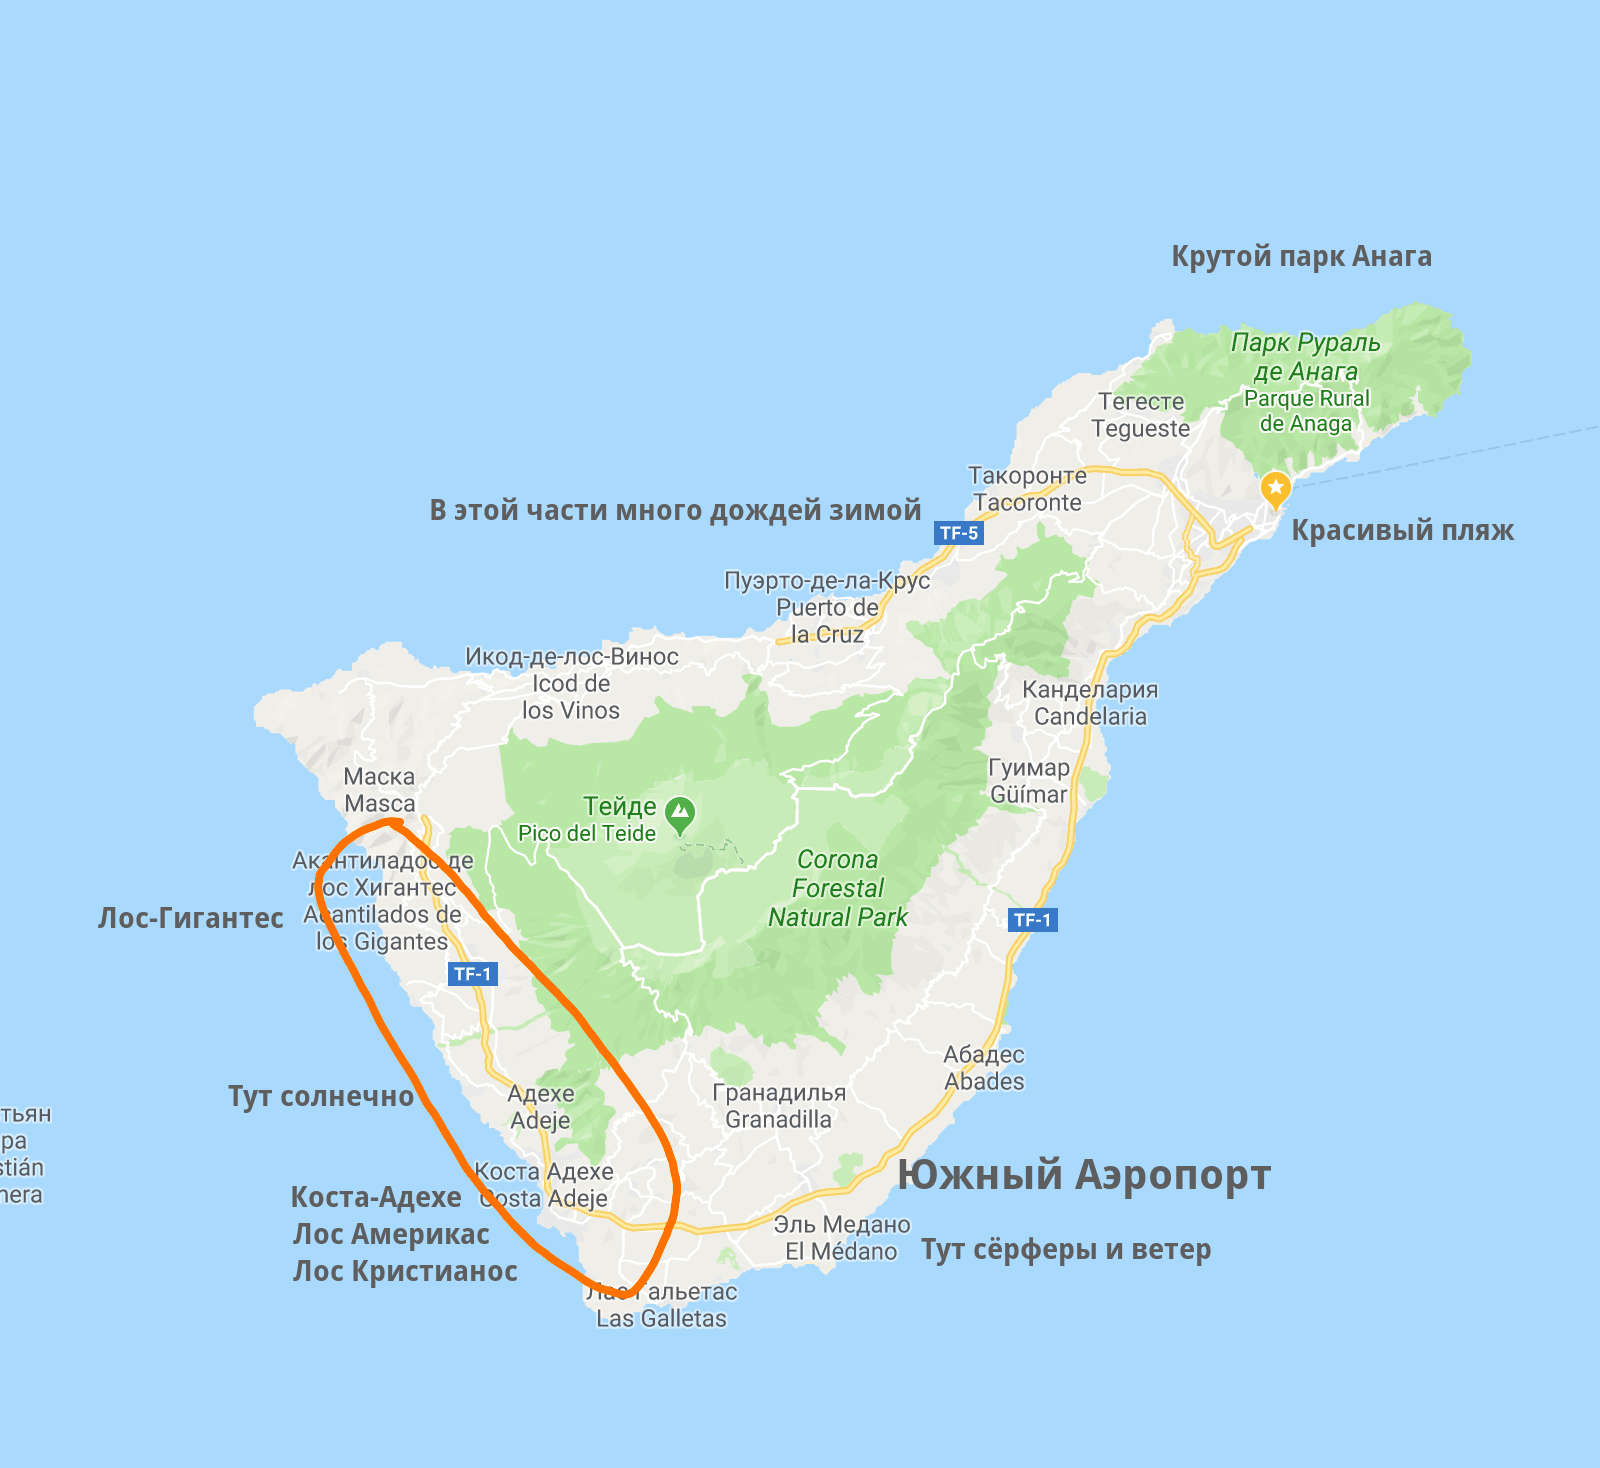 Аэропорты на карте тенерифе: северный и южный, названия с описаниями